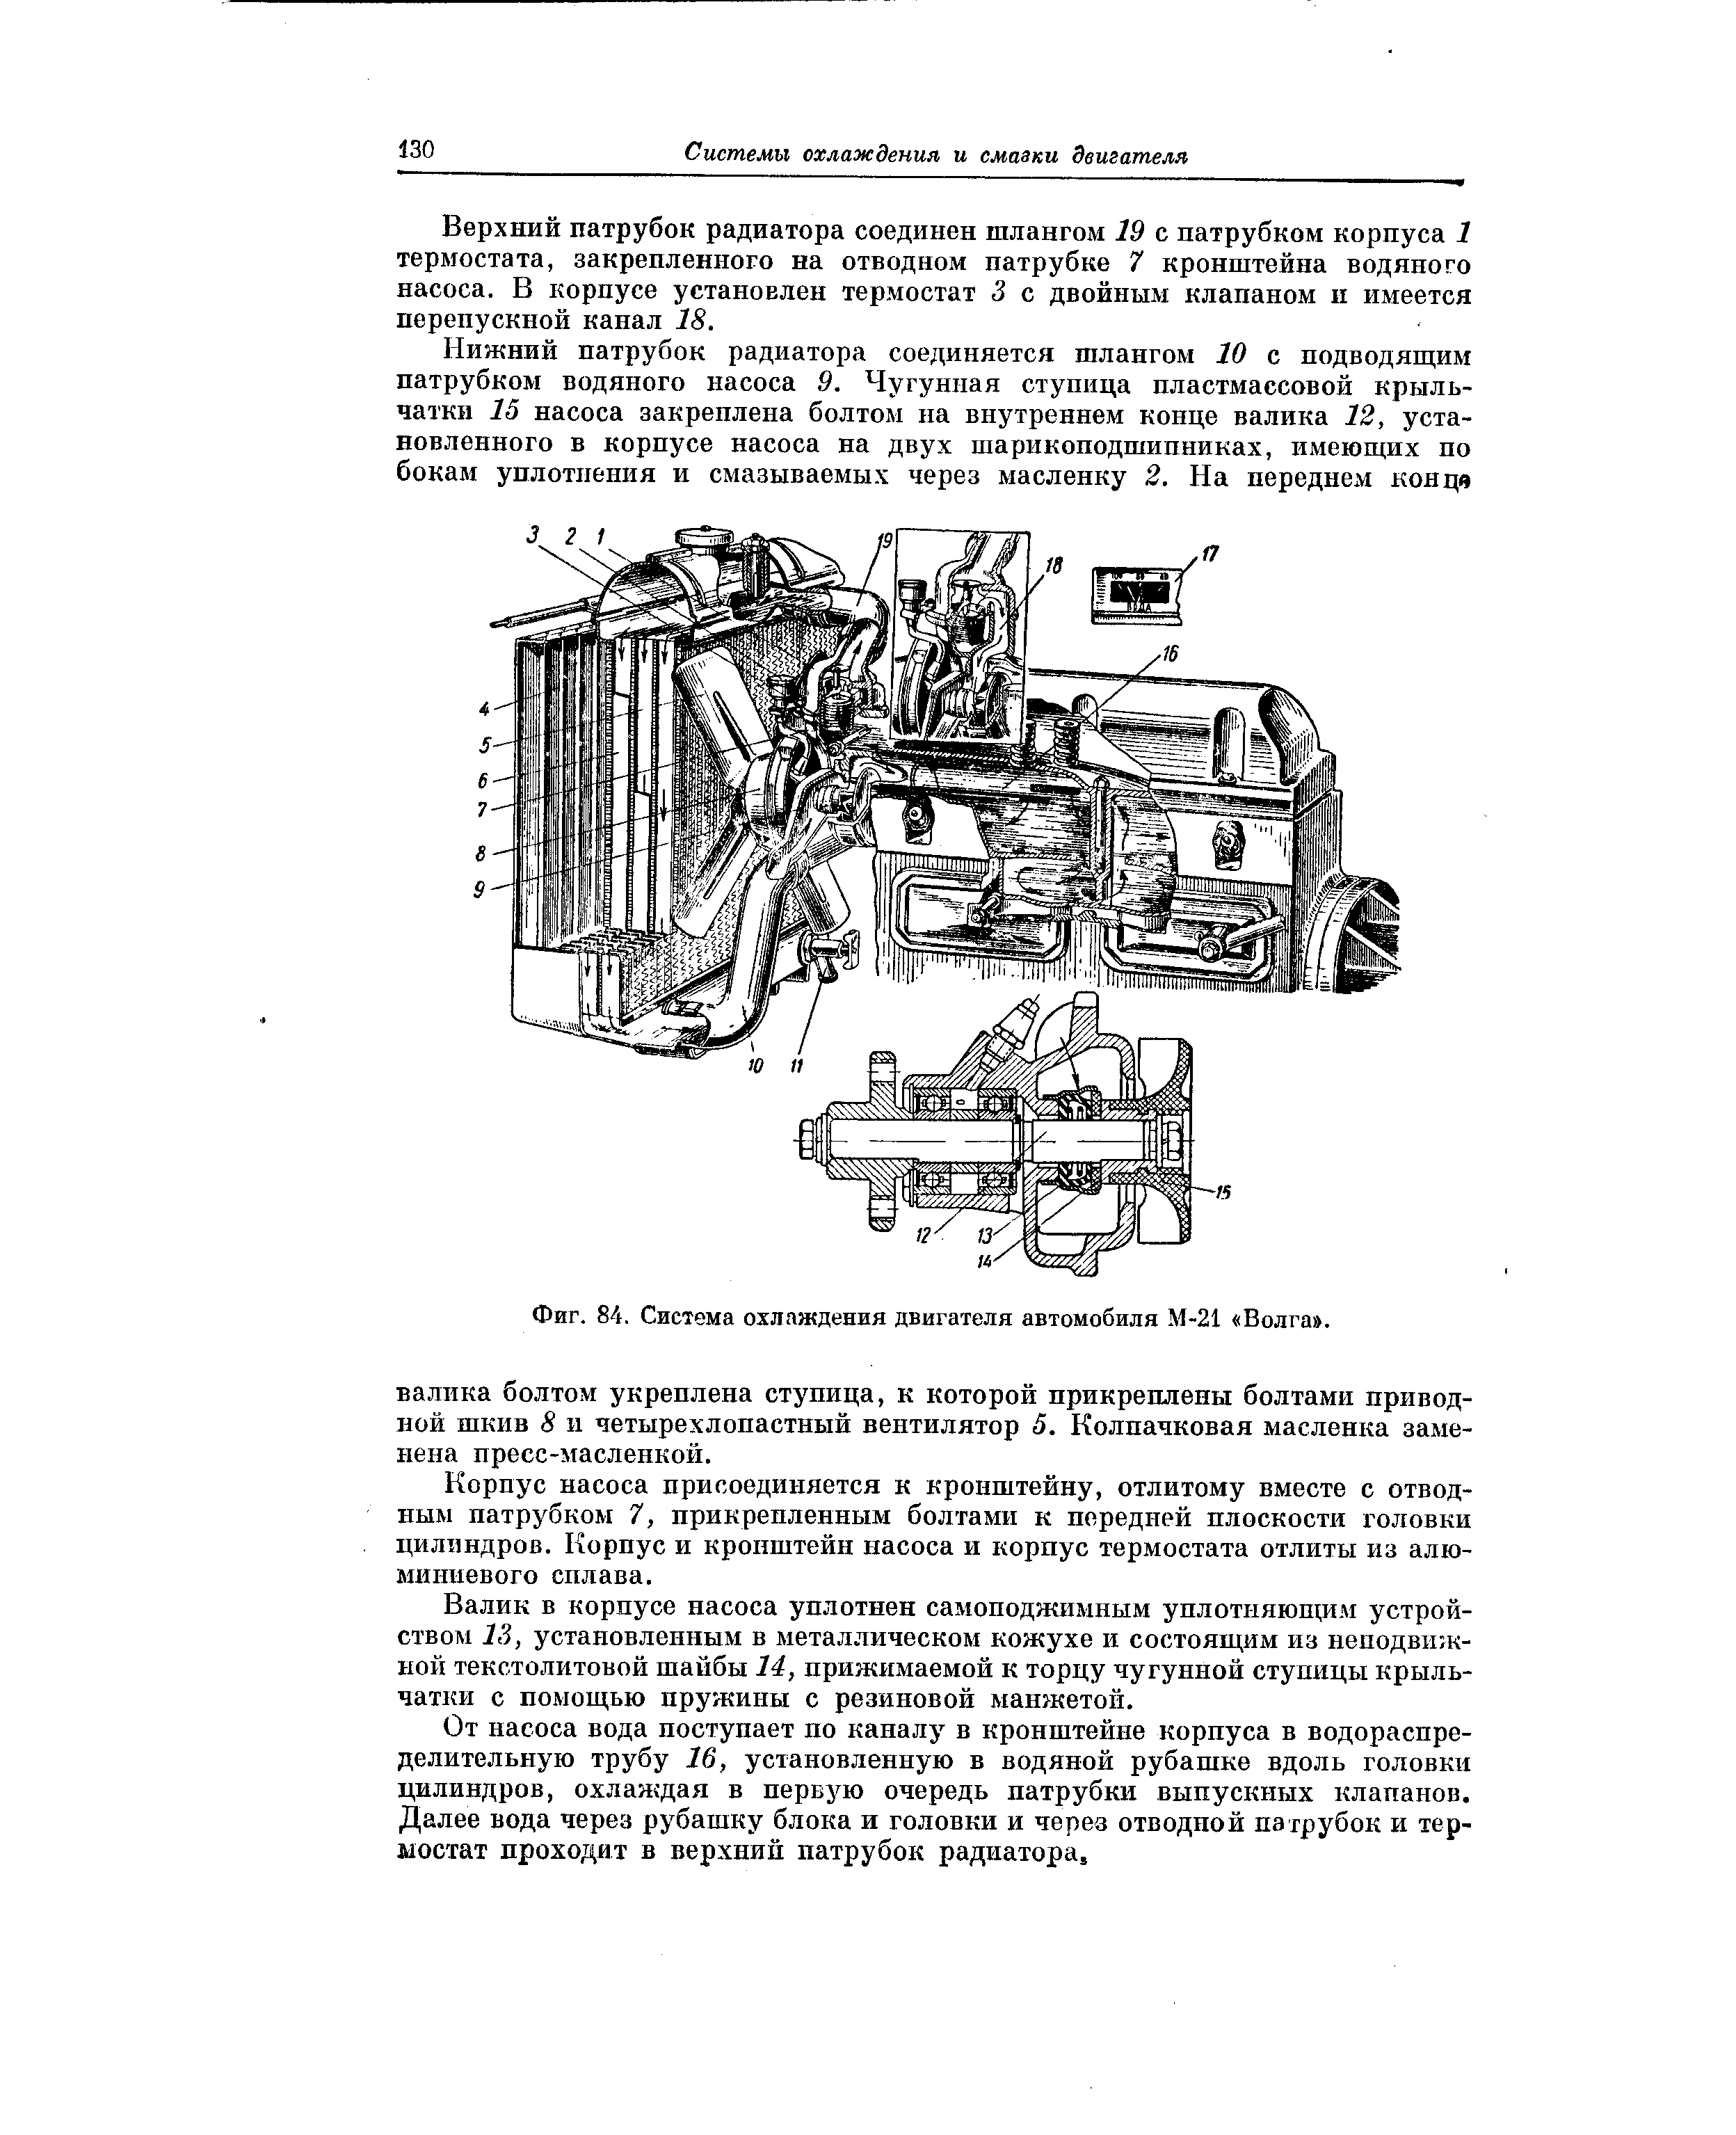 Фиг. 84. Система охлаждения двигателя автомобиля М-21 Волга .
